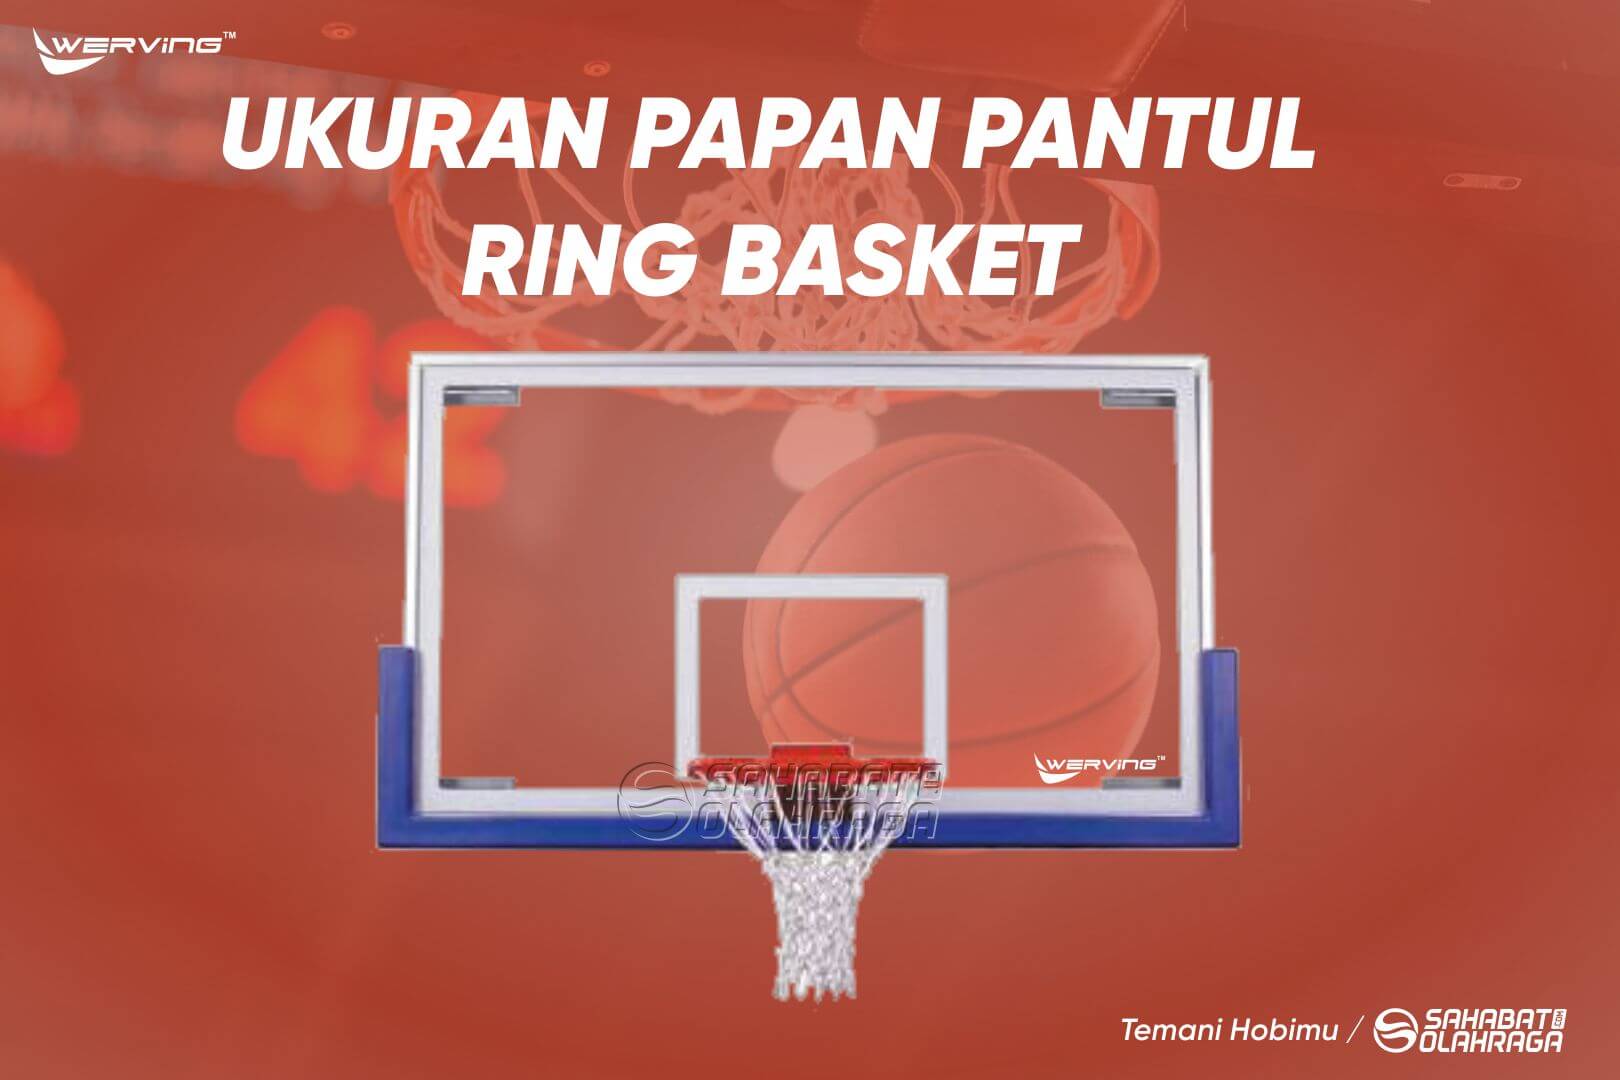 Ukuran Papan Pantul Ring Basket